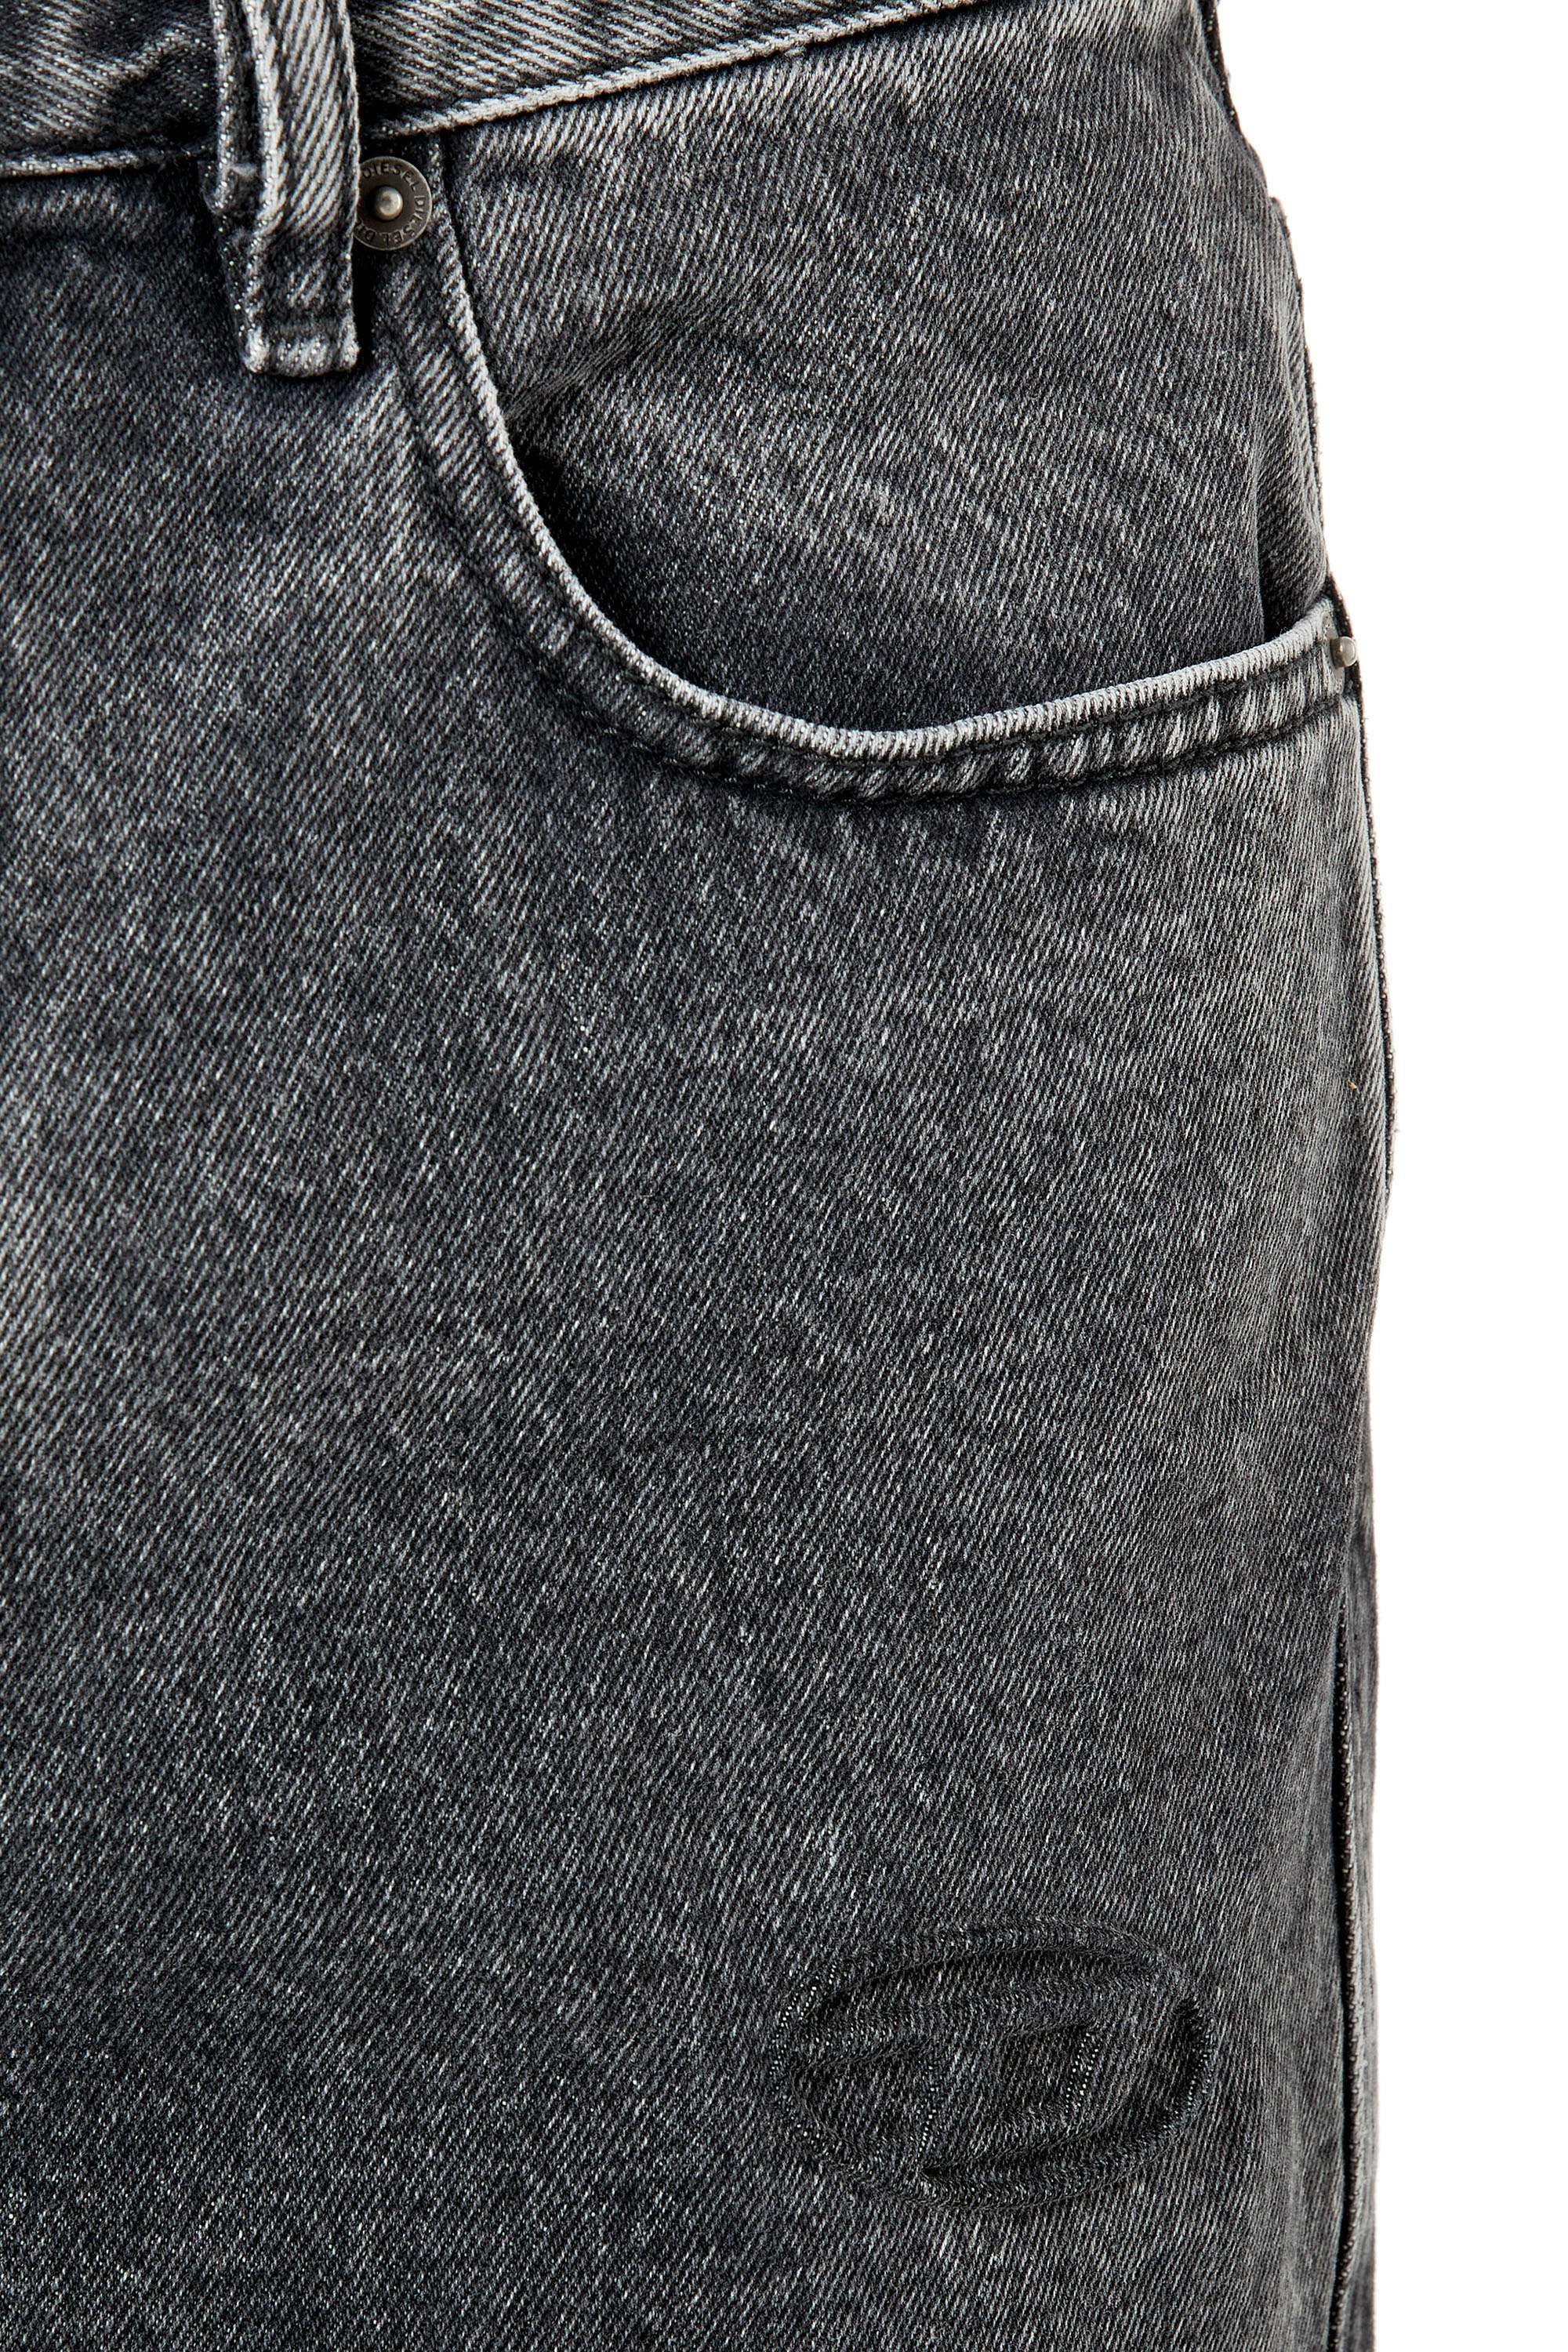 Diesel - Straight Jeans 2020 D-Viker 007N4, Black/Dark grey - Image 3